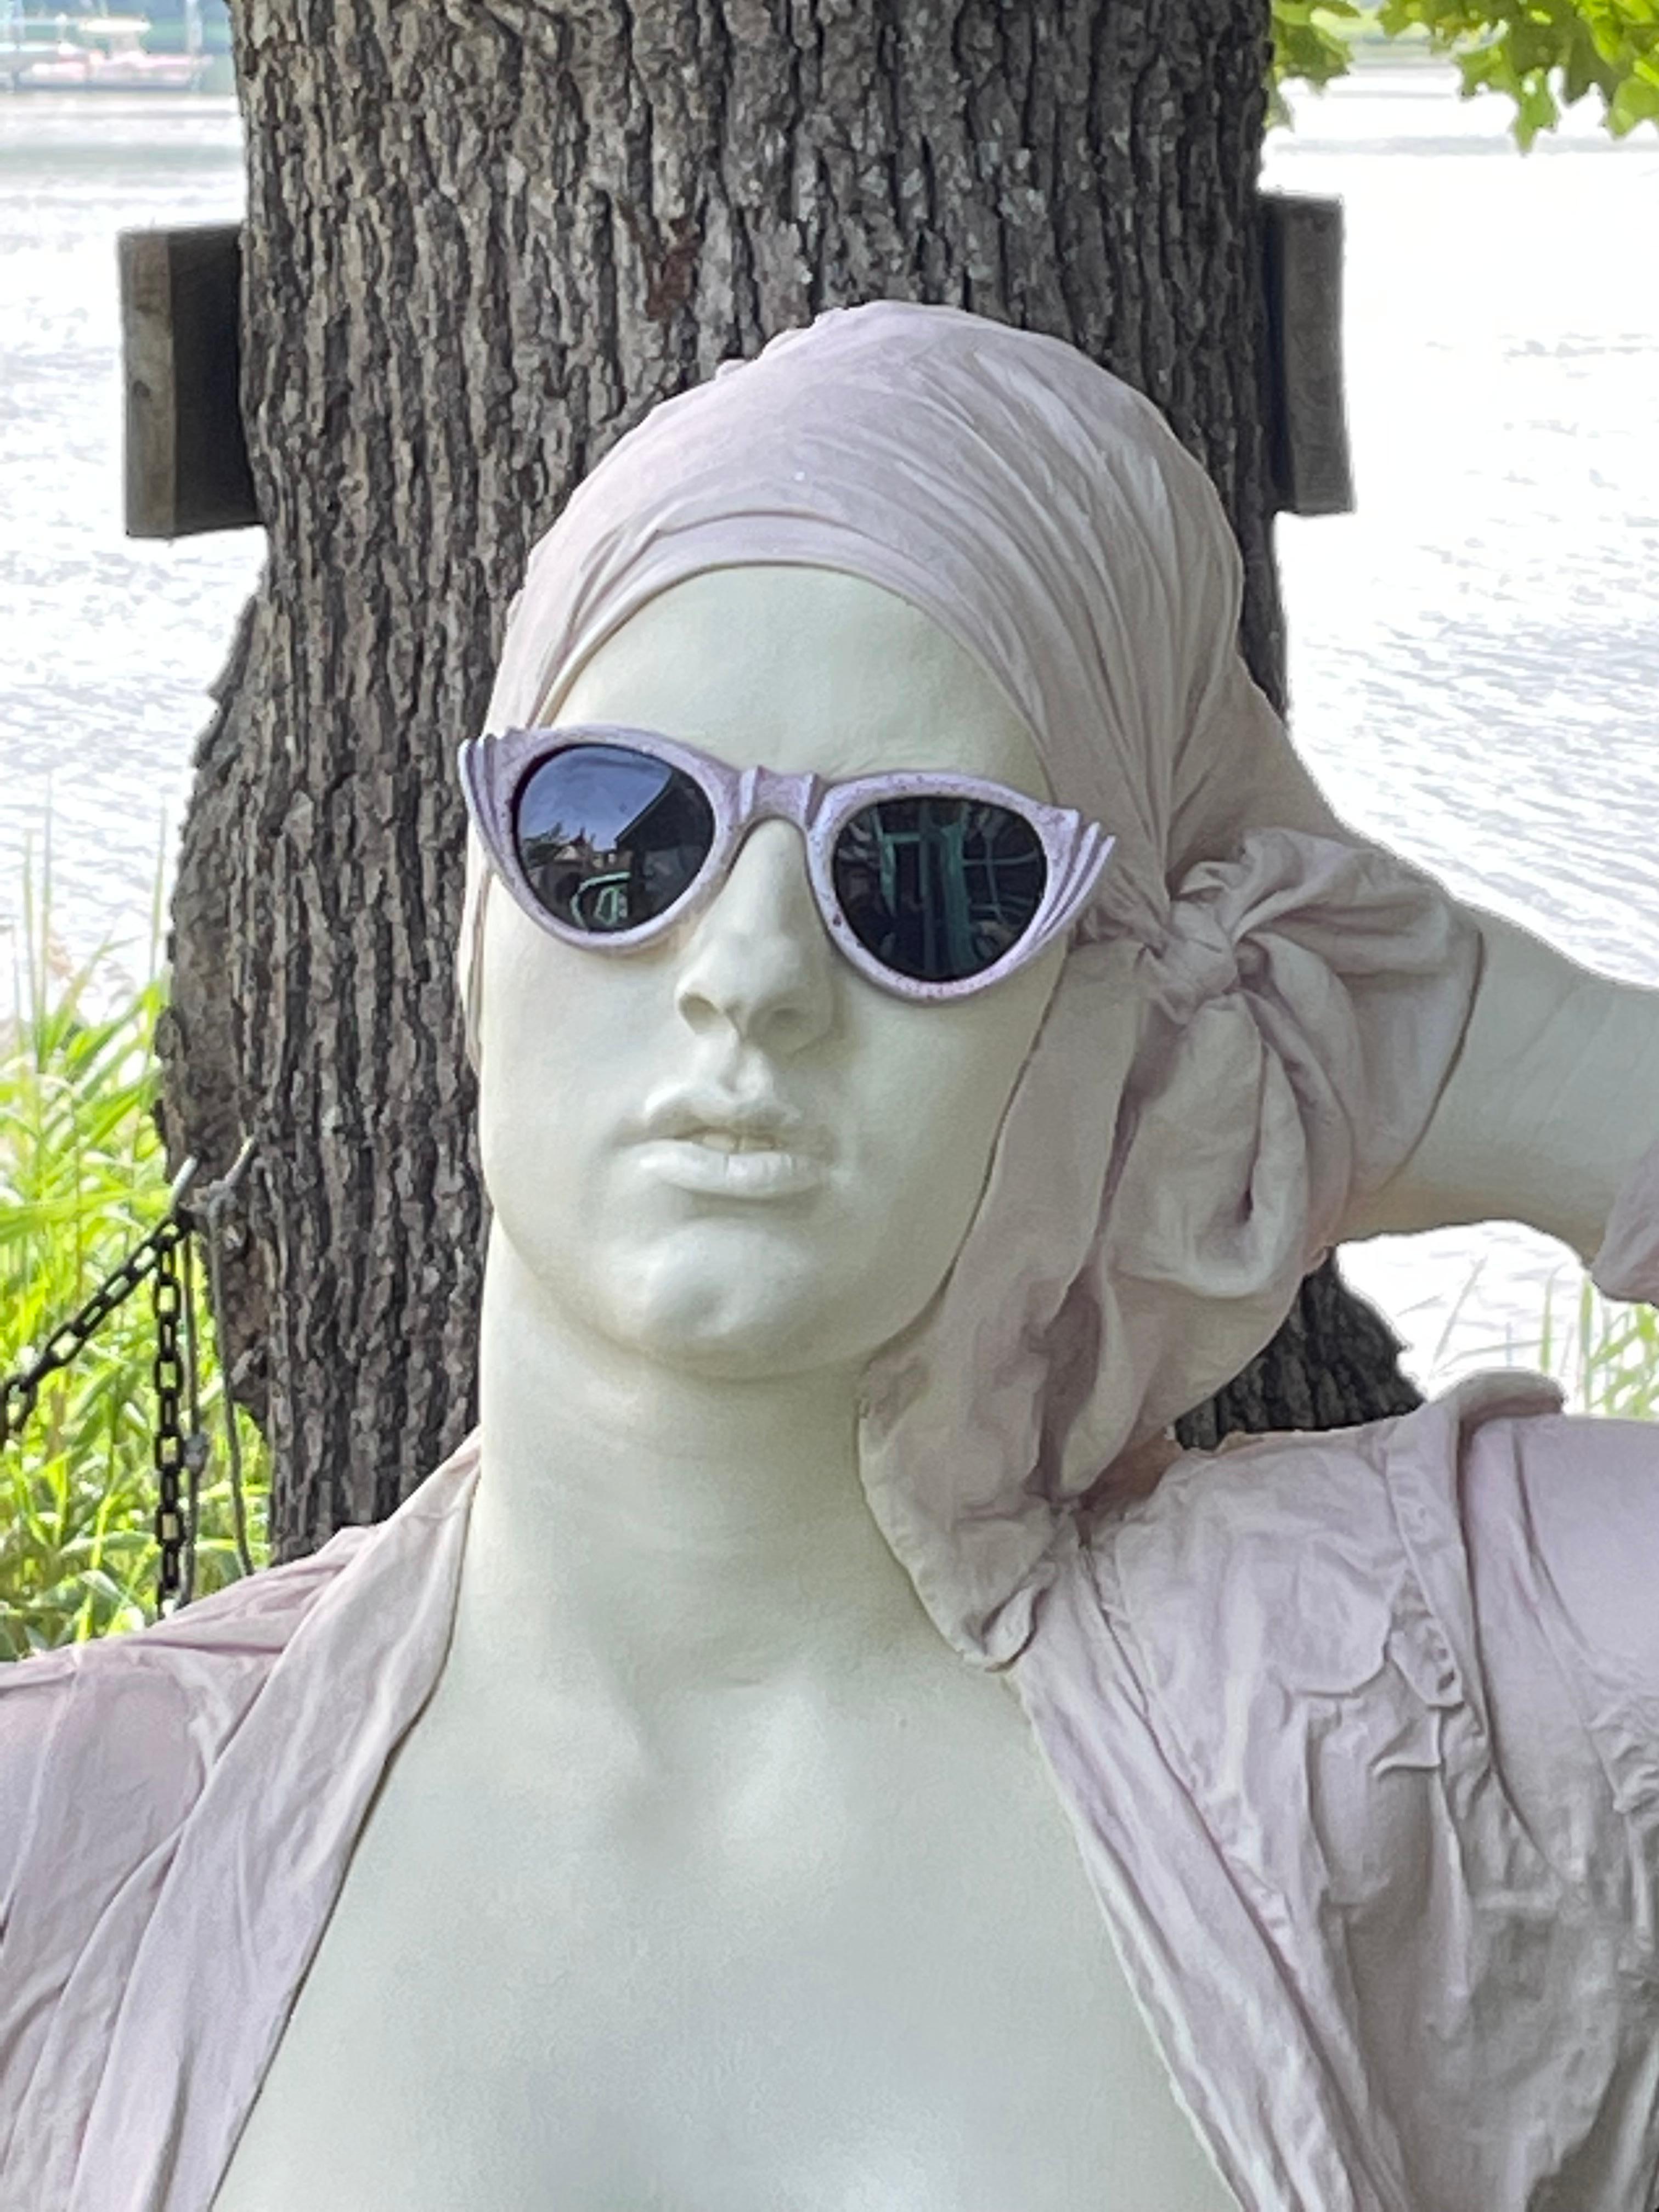 Wunderschöne und skurrile Skulpturen von Marc Sijan, dessen Werke in der ganzen Welt zu finden sind. Seine Kunstform wird als Hyperrealismus bezeichnet. Dieses Stück ist eine lebensechte Keramikskulptur einer Frau im Badeanzug und mit Sonnenbrille.